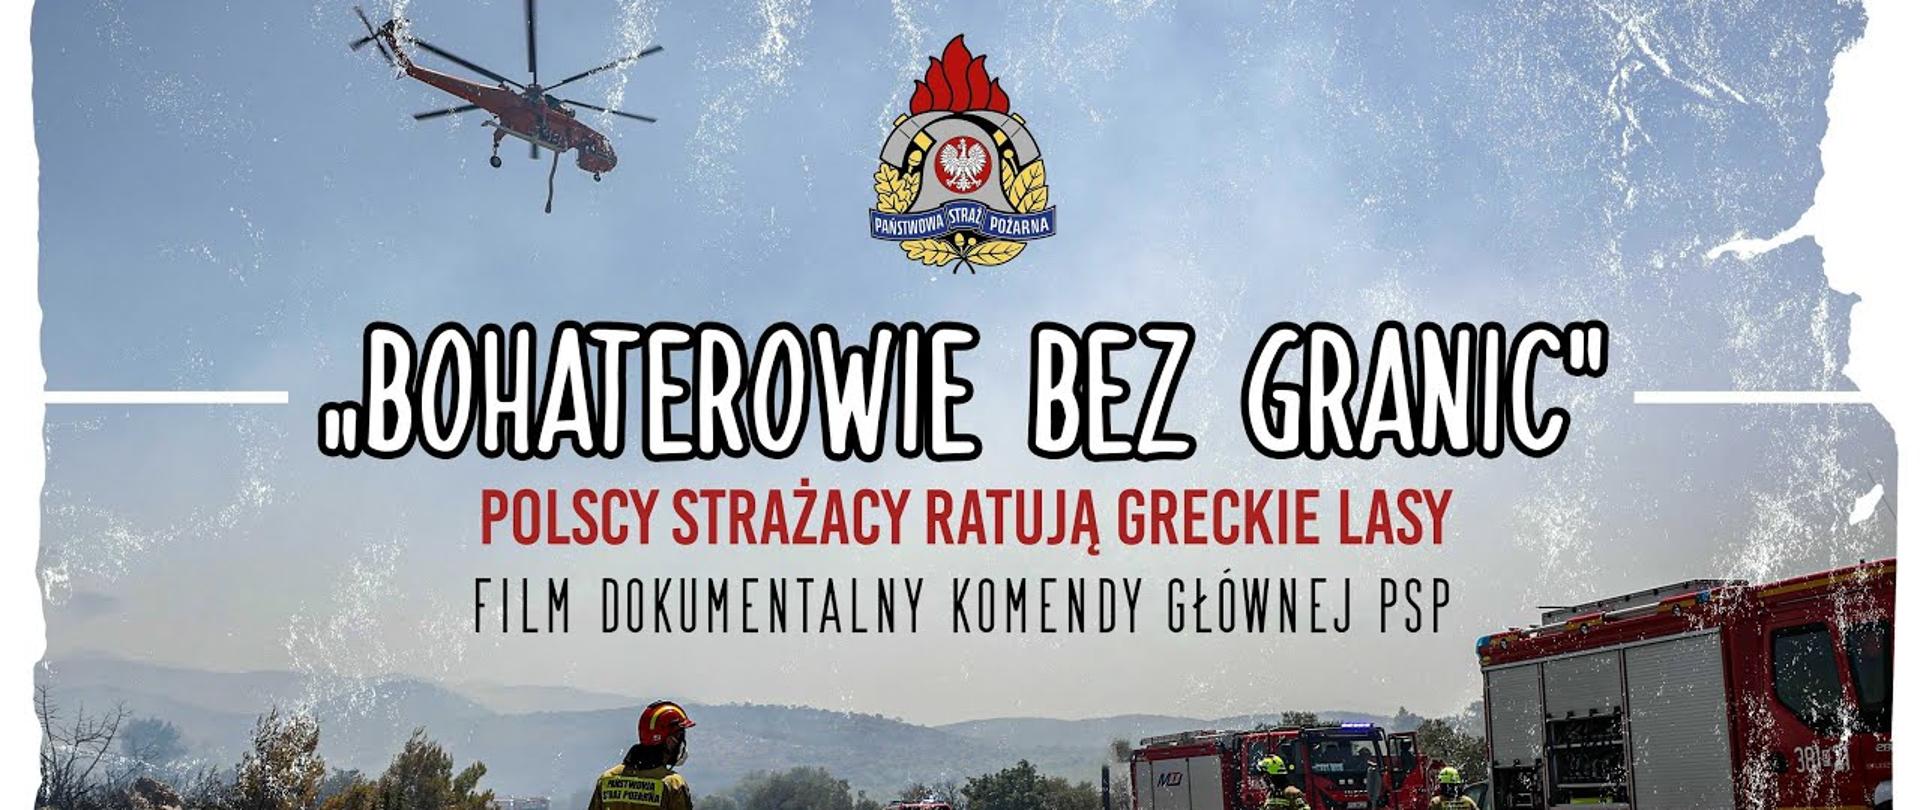 Kadr zapowiadający film "Bohaterowie bez granic" - polscy strażacy ratują greckie lasy, film dokumentalny Komendy Głównej PSP